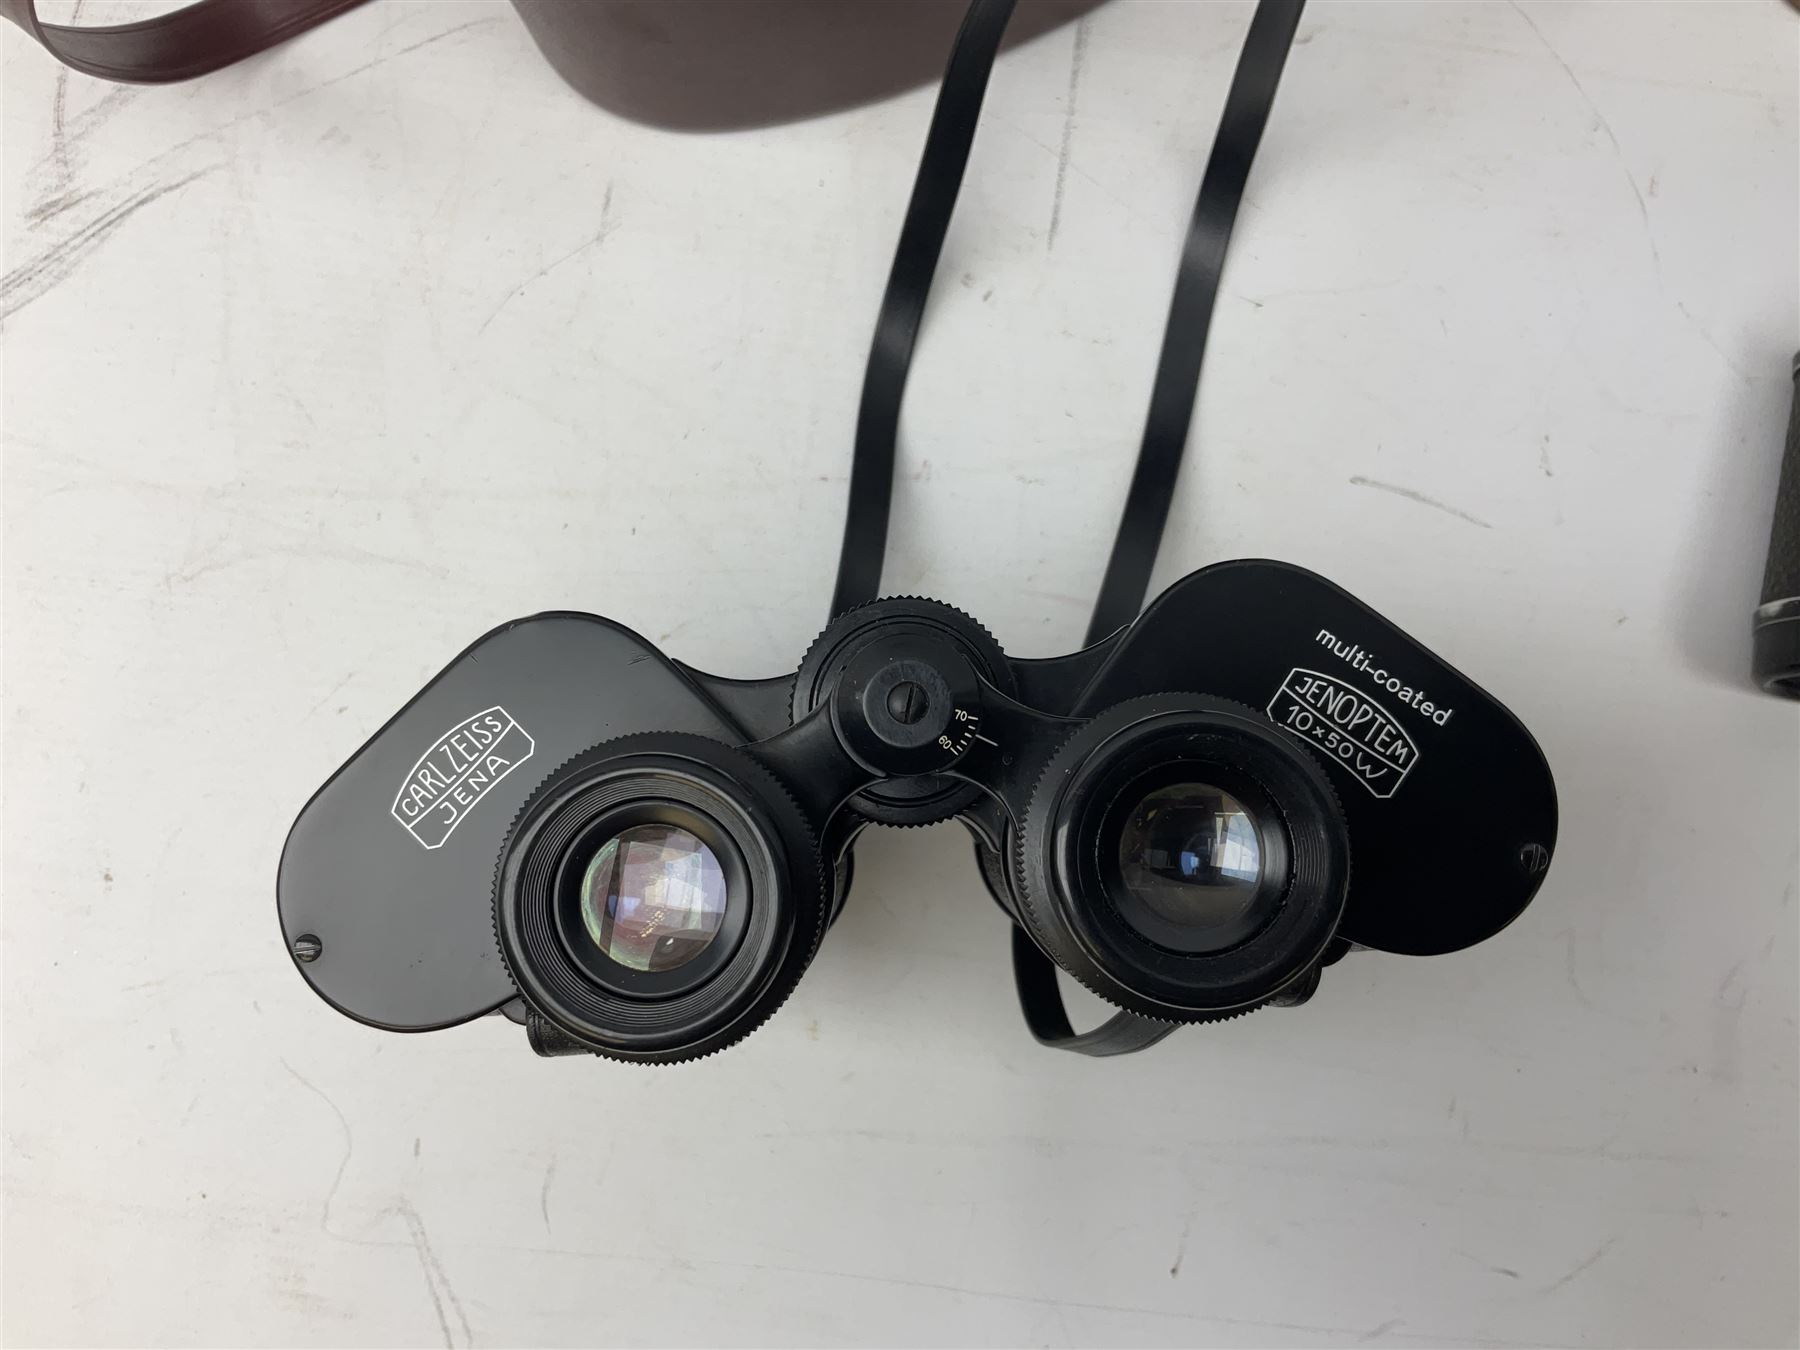 Three pairs of Carl Zeiss Jena binoculars, Jenoptem 10x50W